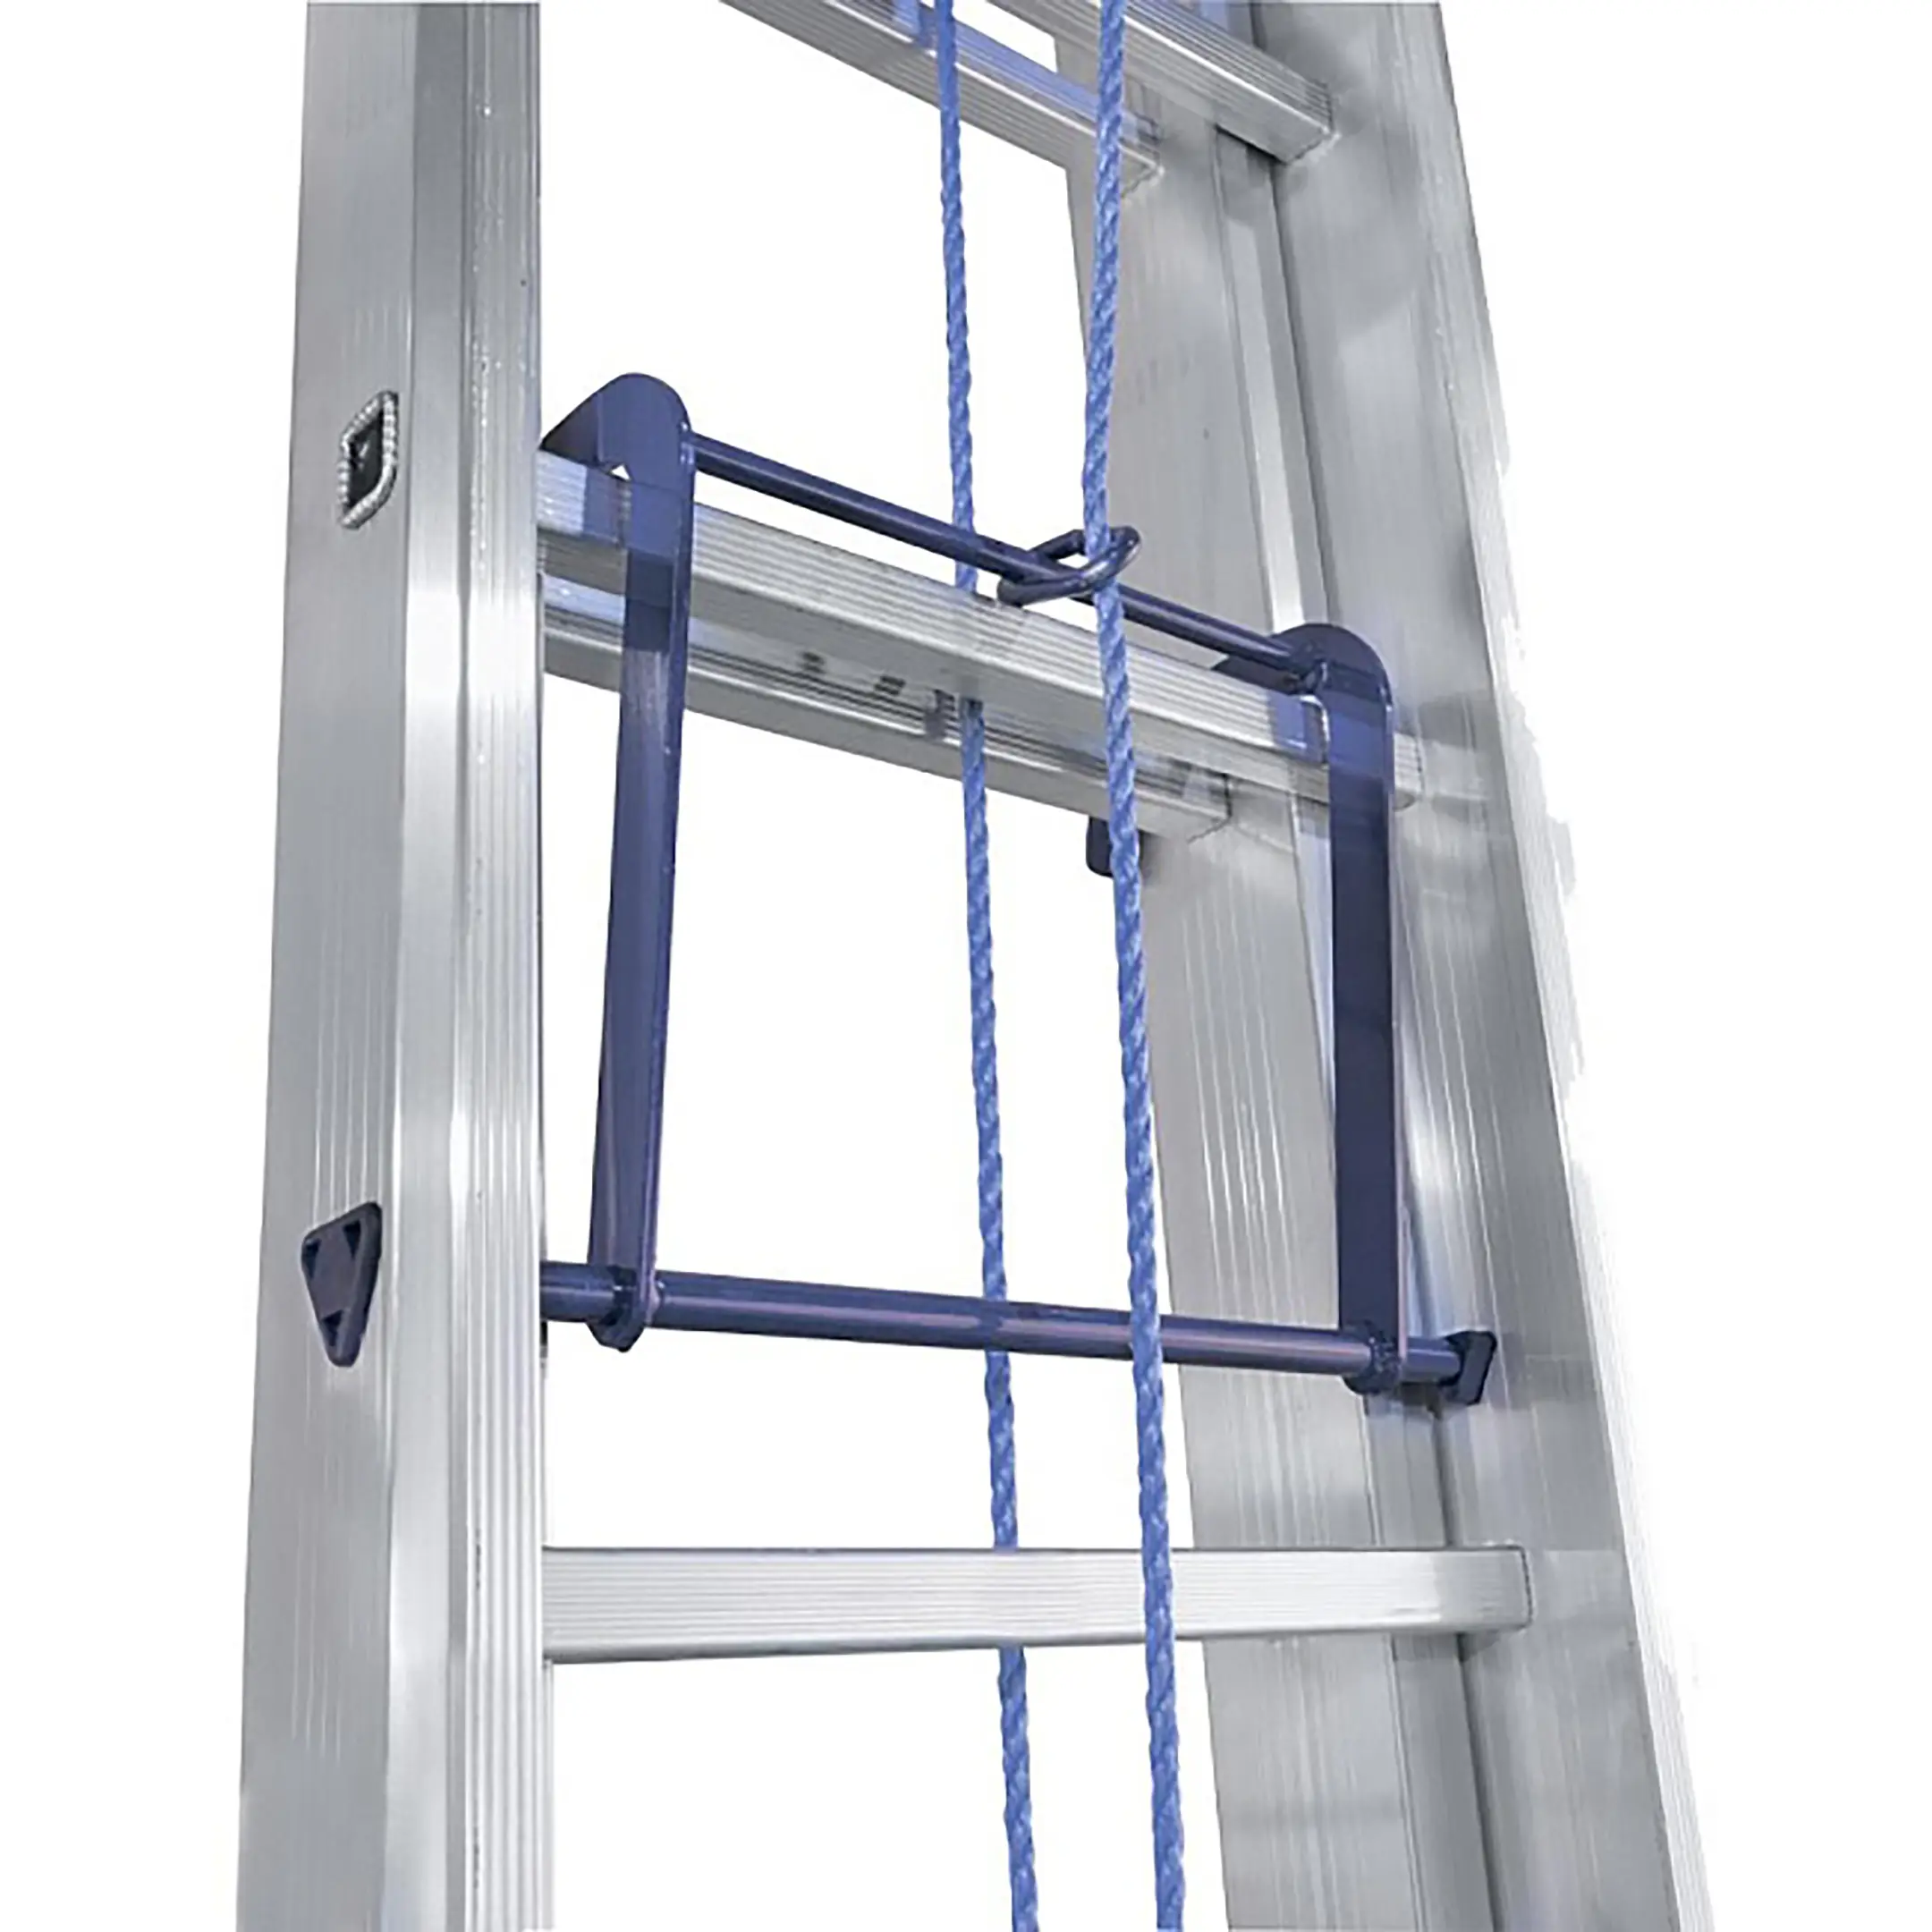 Лестница трехсекционная алюминиевая выдвижная с тросом Alumet 3х10 арт. 3310